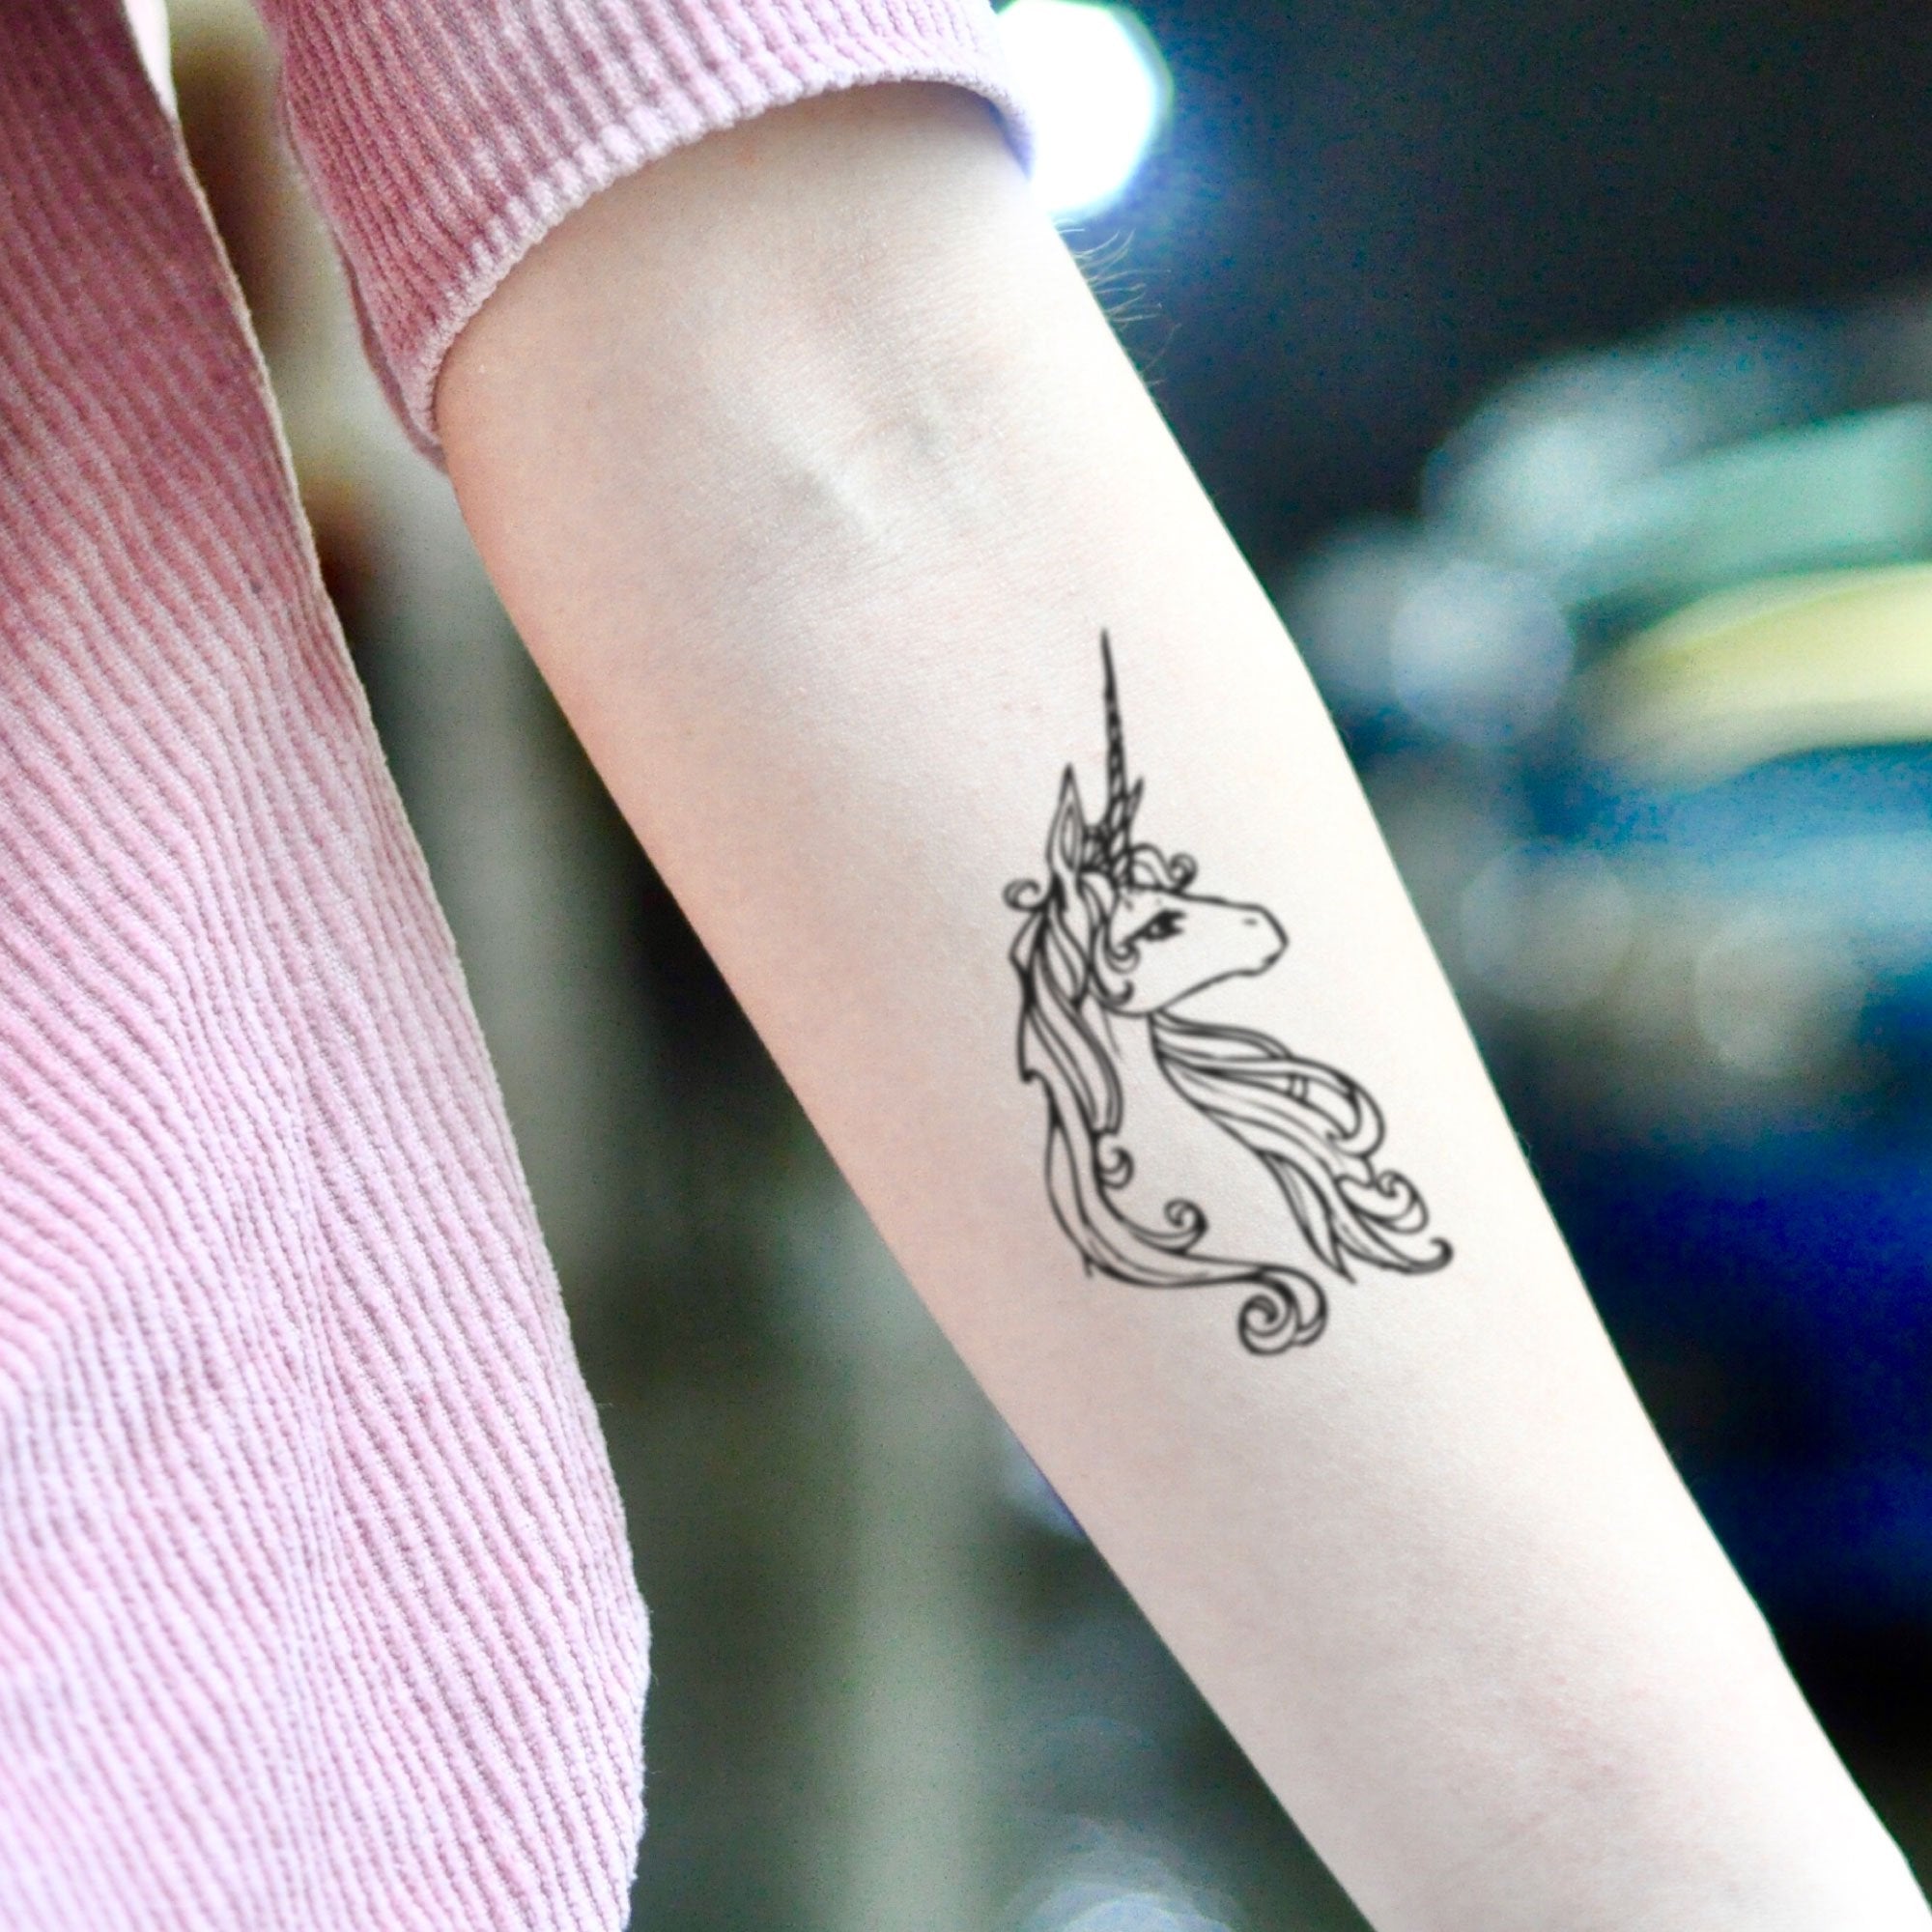 Cute lil geometric unicorn | Unicorn tattoos, Tattoos, Geometric tattoo